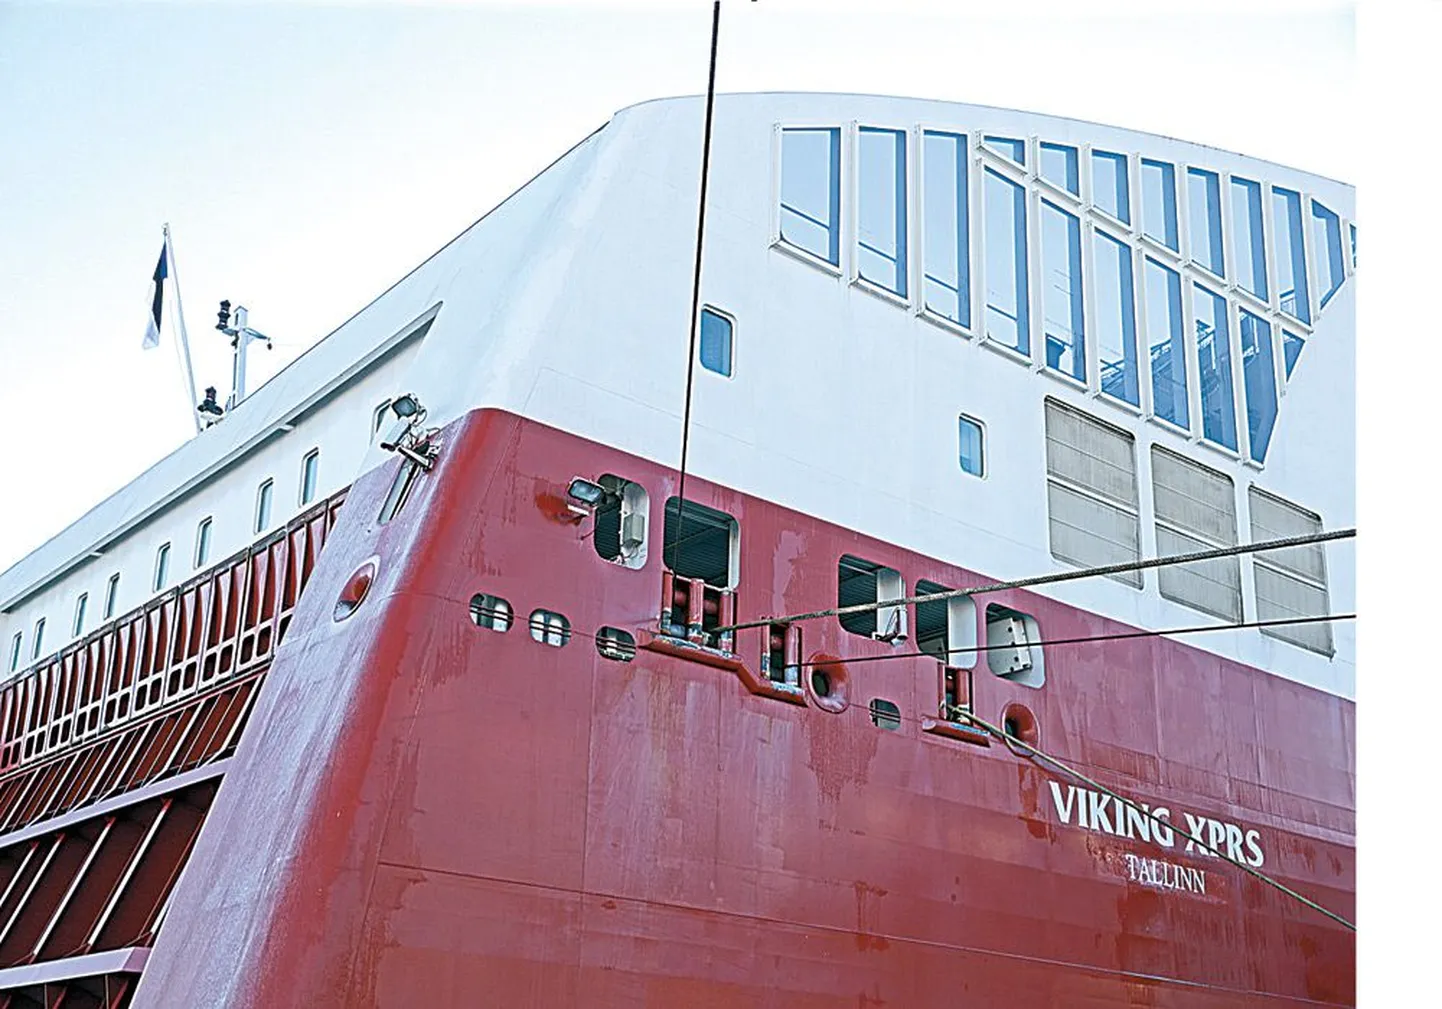 24 января судно Viking XPRS, ранее ходившее под шведским флагом, впервые вошло в порт Таллинна под сине-черно-белым триколором Эстонии. Компания Viking Line объяснила смену флага стремлением сэкономить на заработной плате.